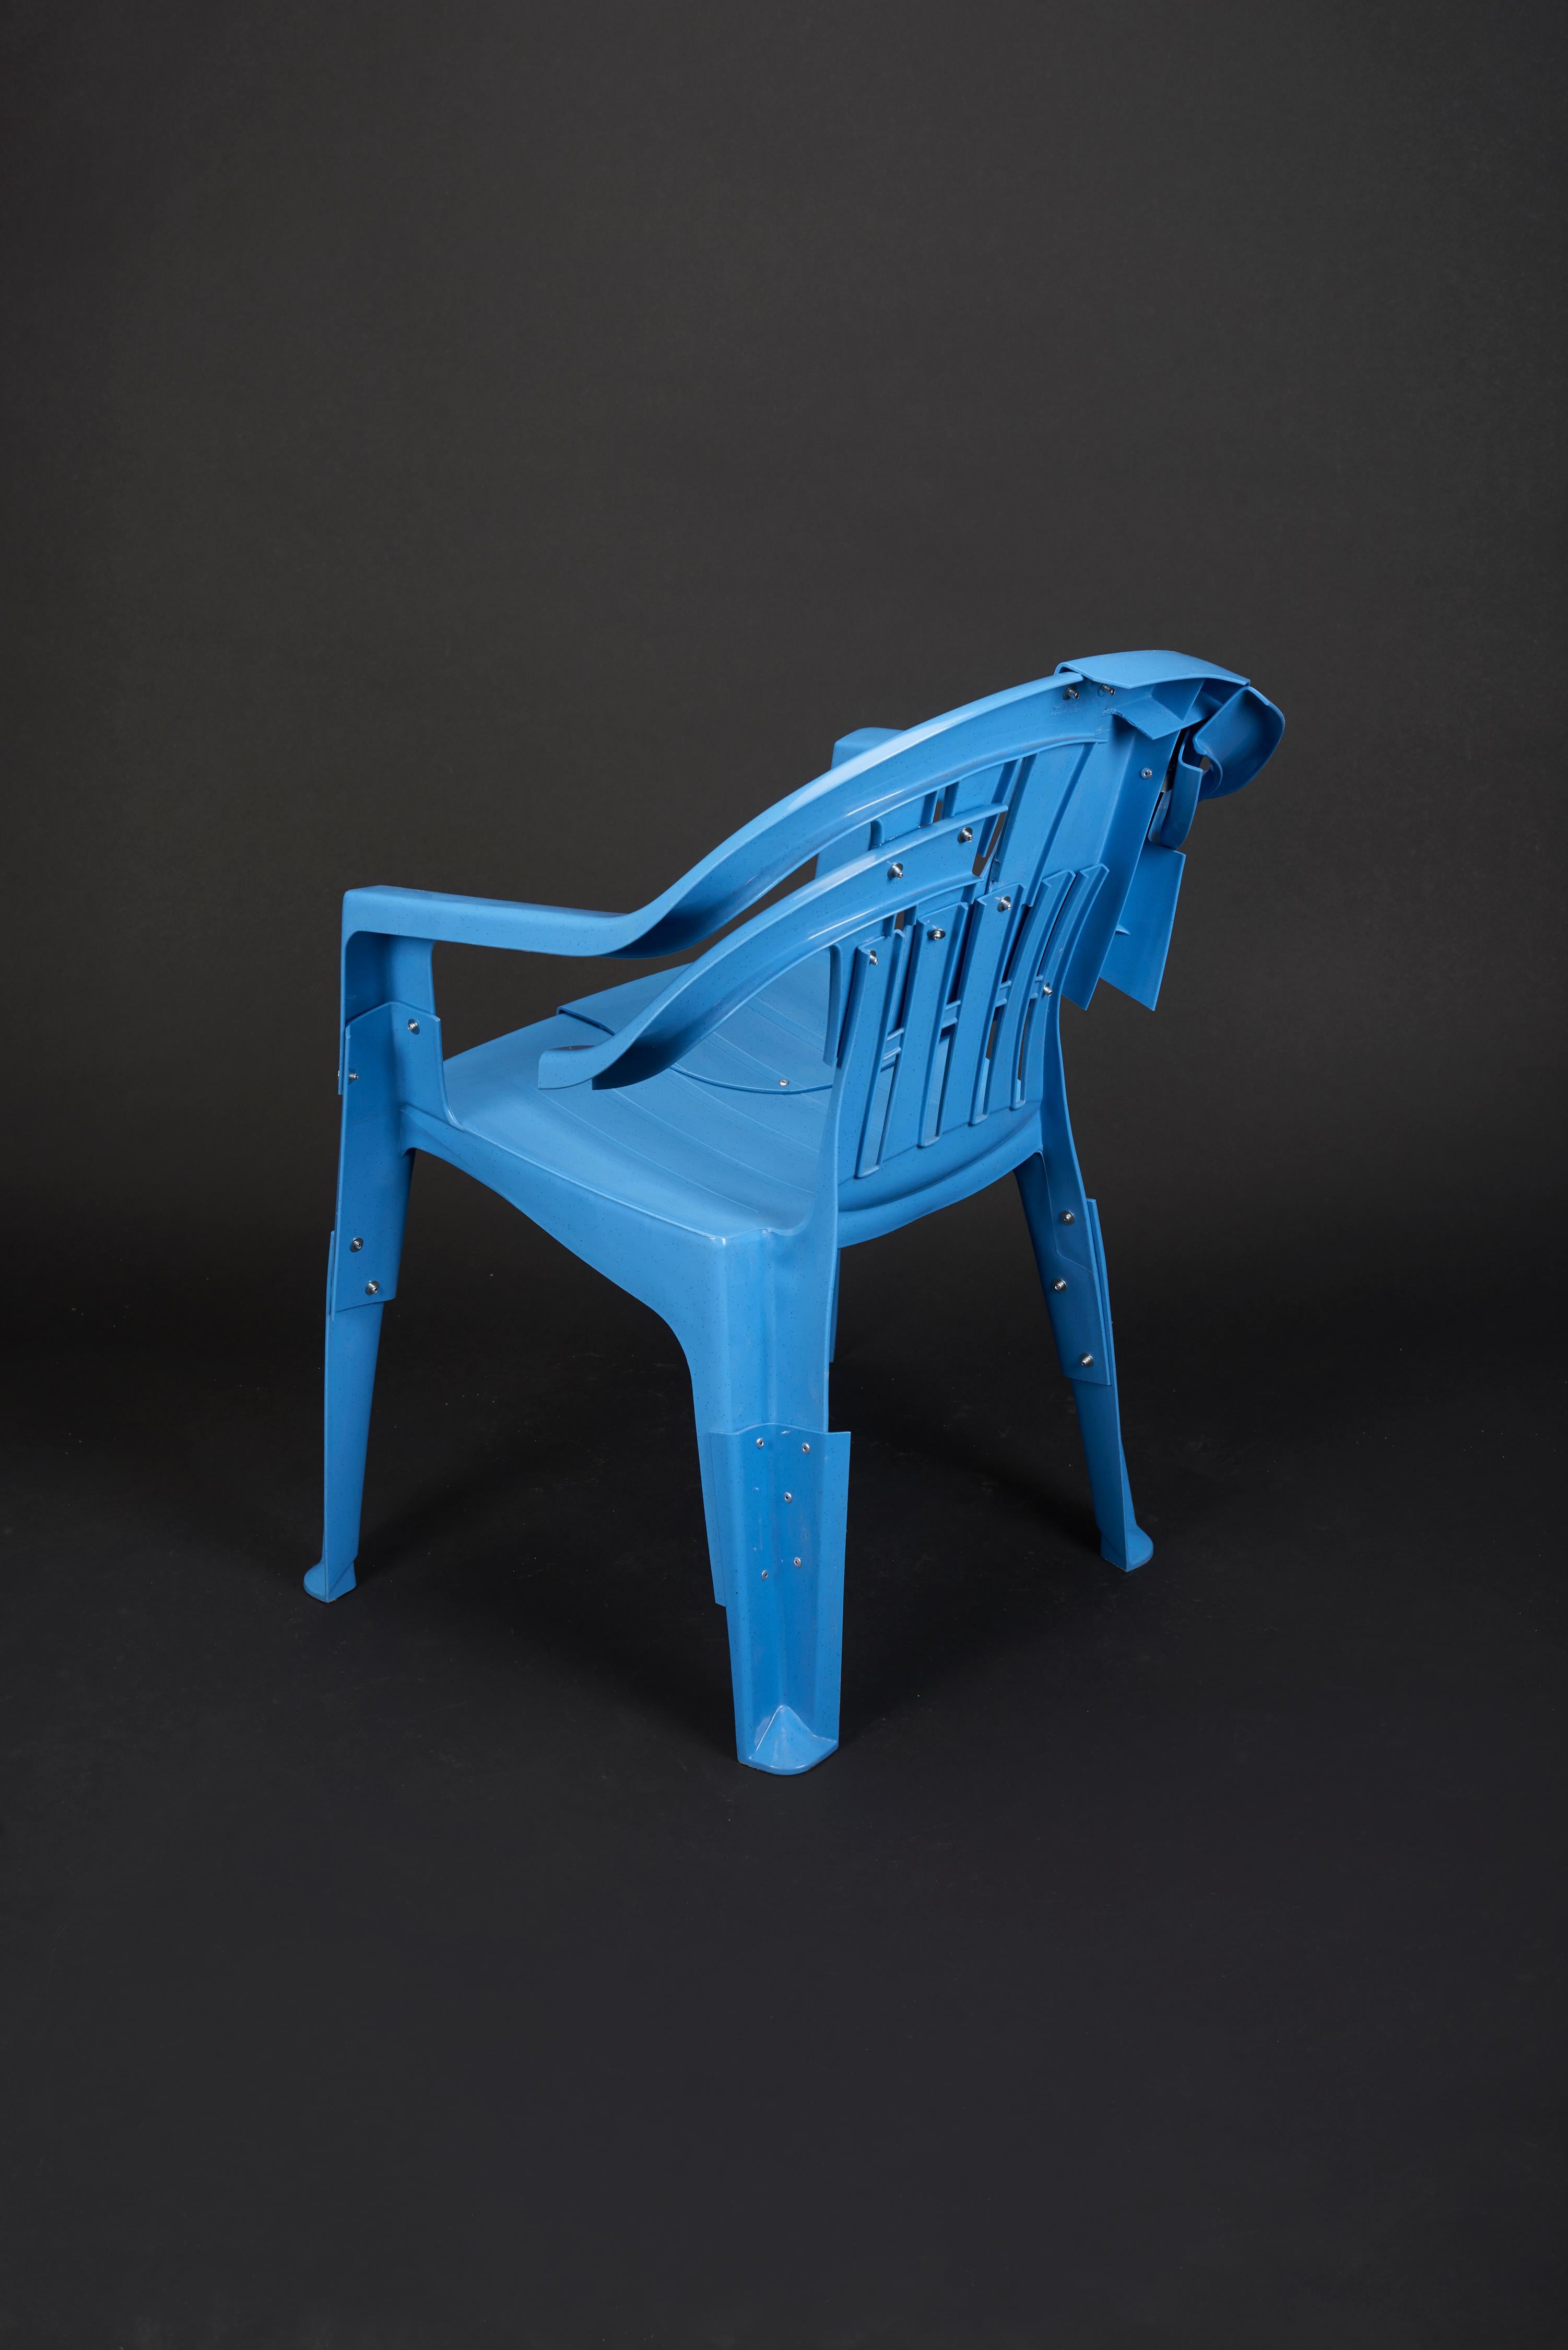 Découpage Blue Room Armchair, Pierre Castignola, Plastic Chair